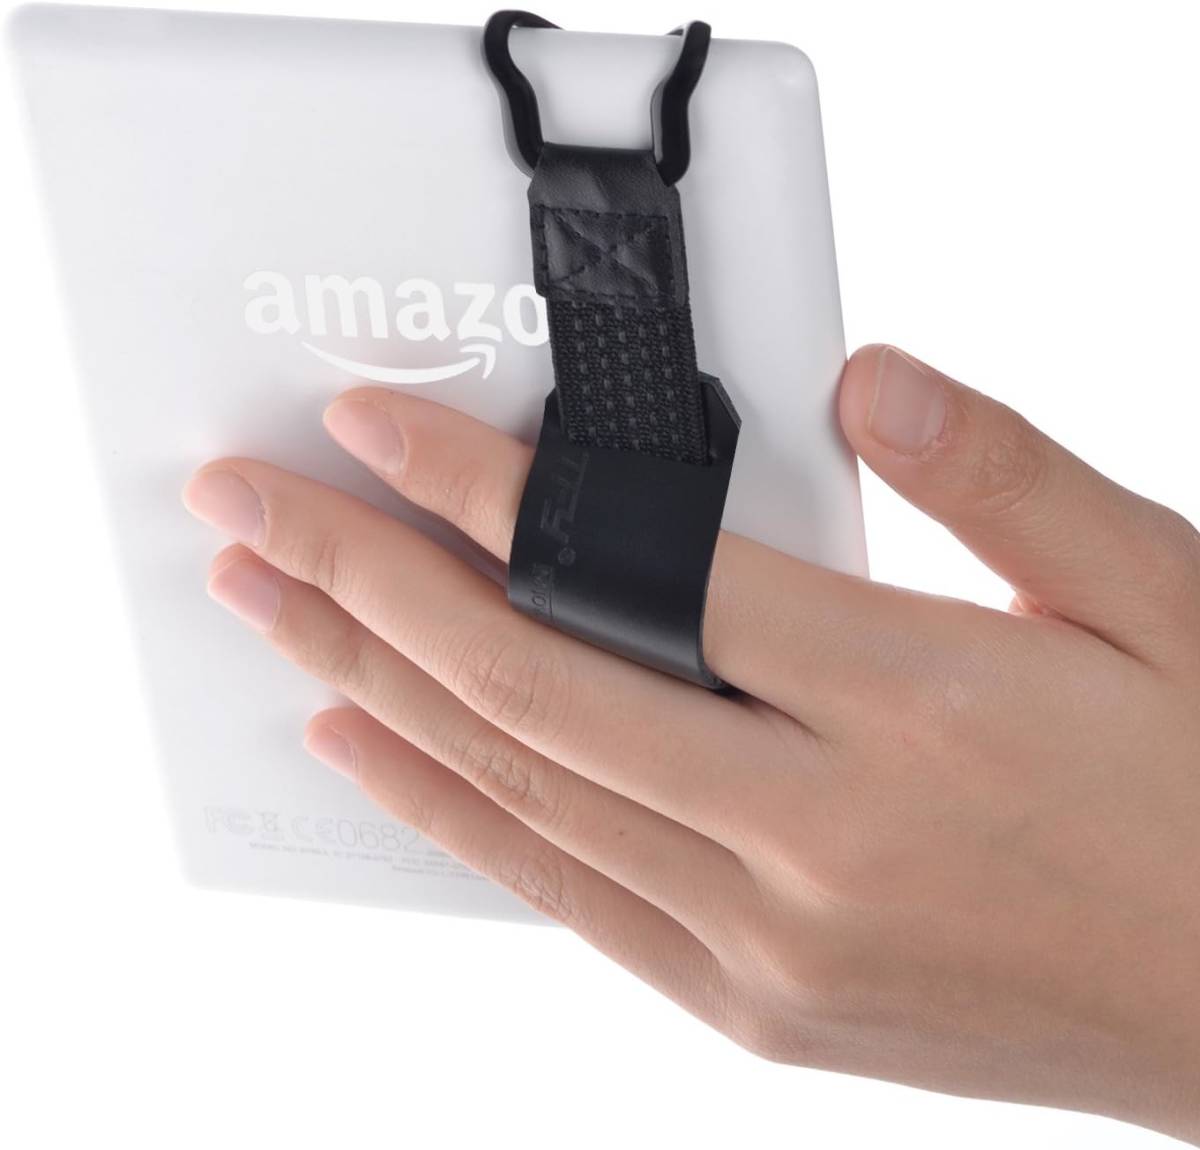 TFY safety hand strap + leather belt holder stand correspondence - Kindle Voyage, 6 -inch / Kindl